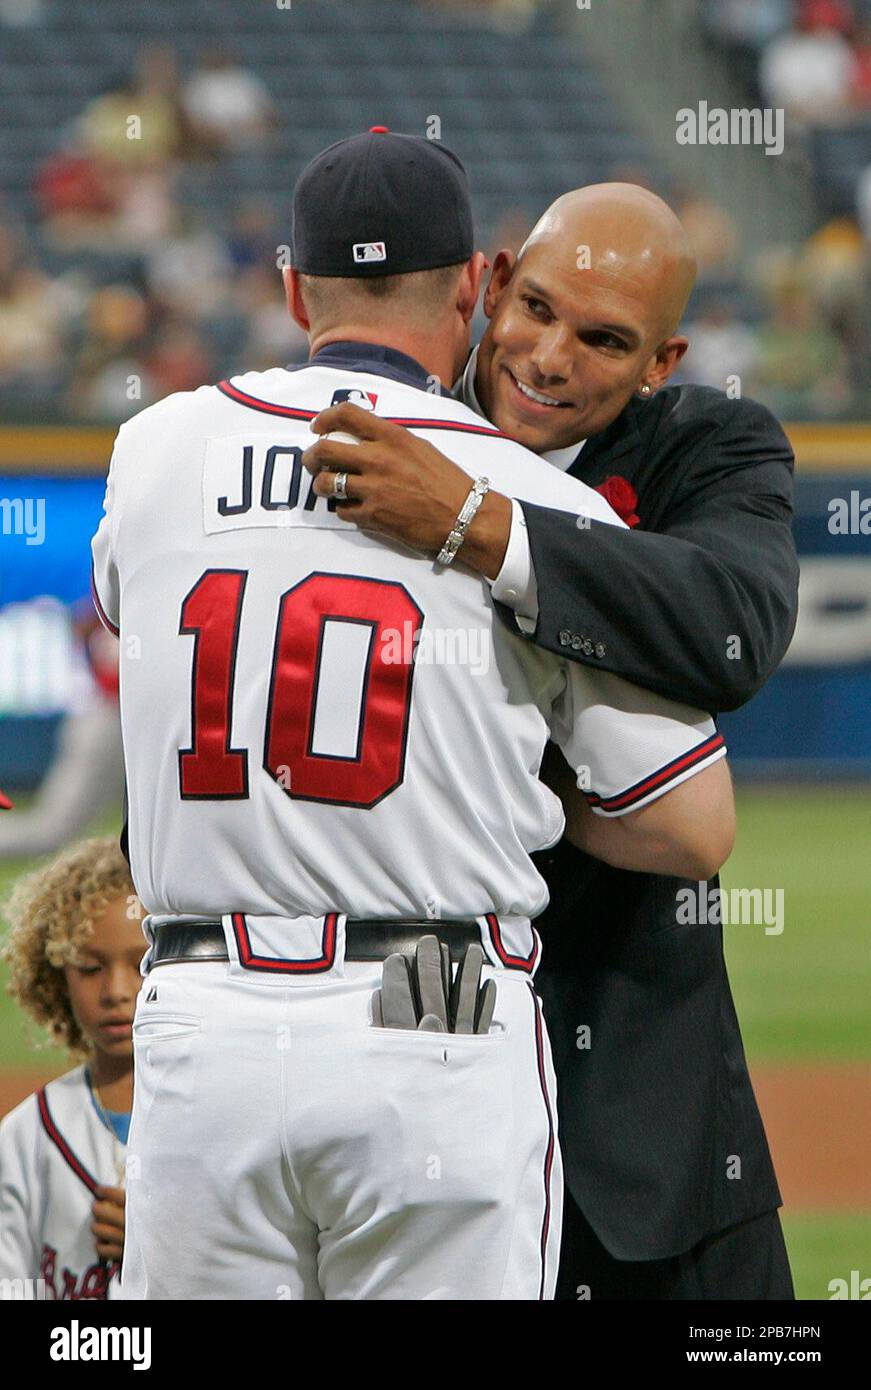 Former Atlanta Braves player David Justice, right, hugs Braves